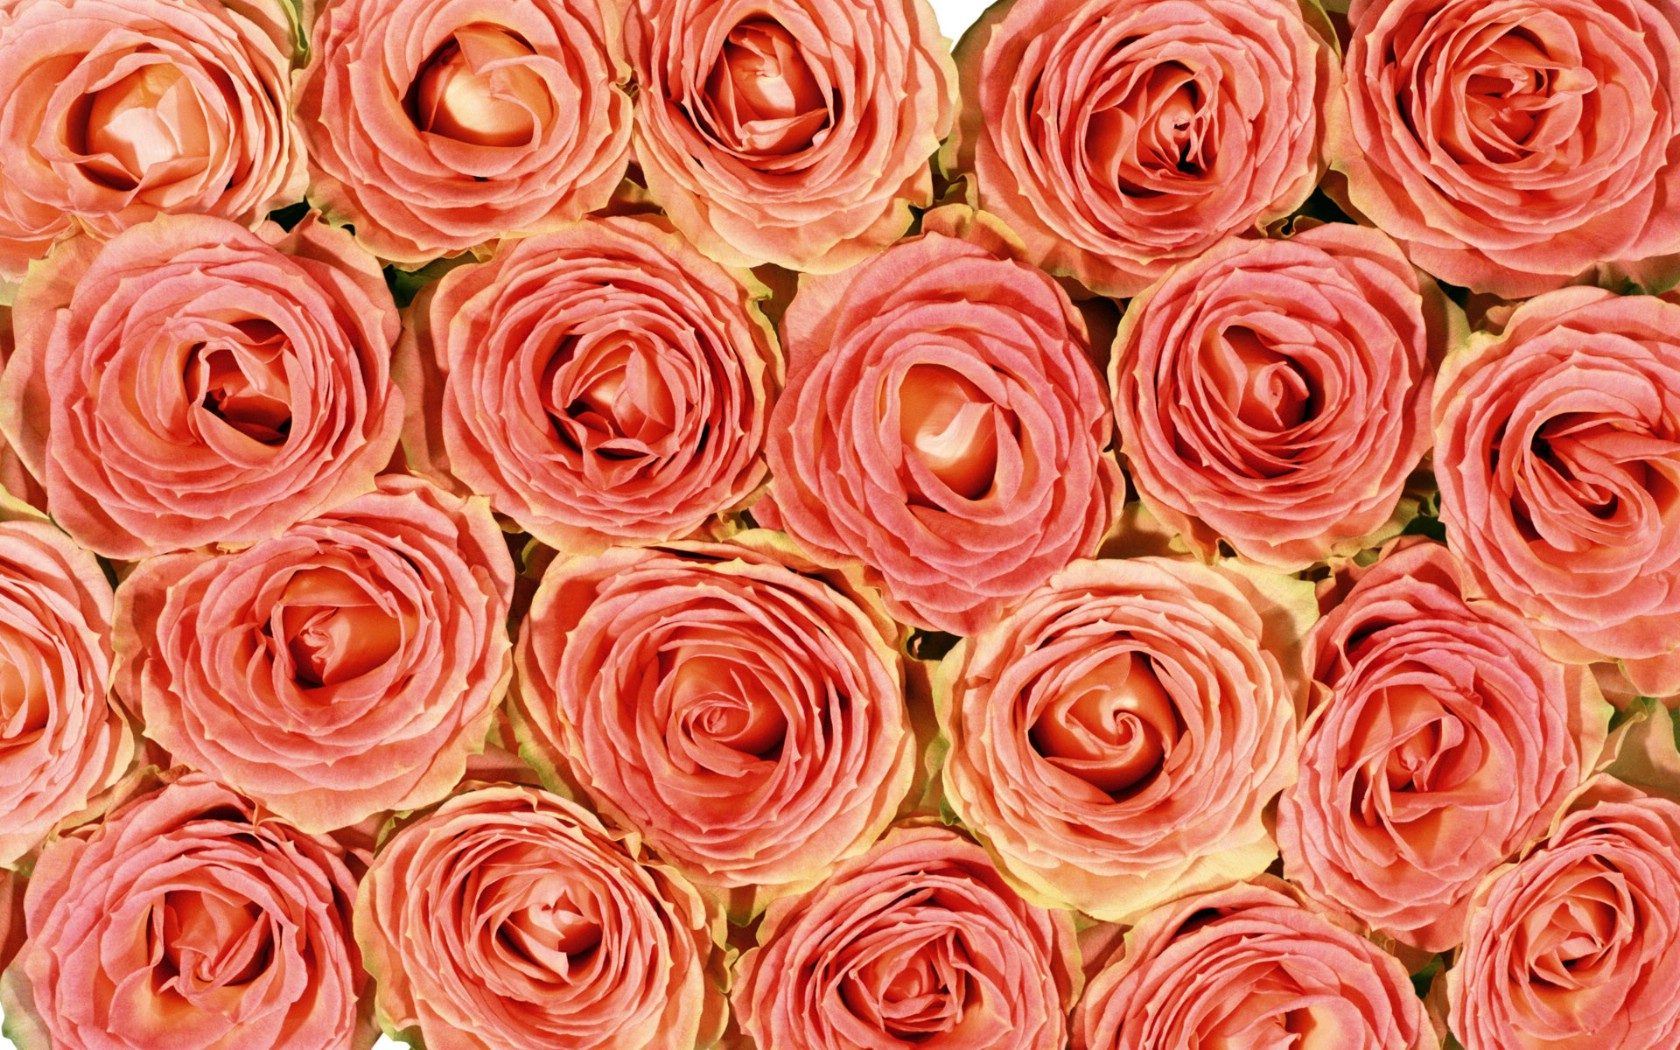 壁纸1680x1050玫瑰写真 4 14壁纸 玫瑰写真壁纸 玫瑰写真图片 玫瑰写真素材 花卉壁纸 花卉图库 花卉图片素材桌面壁纸